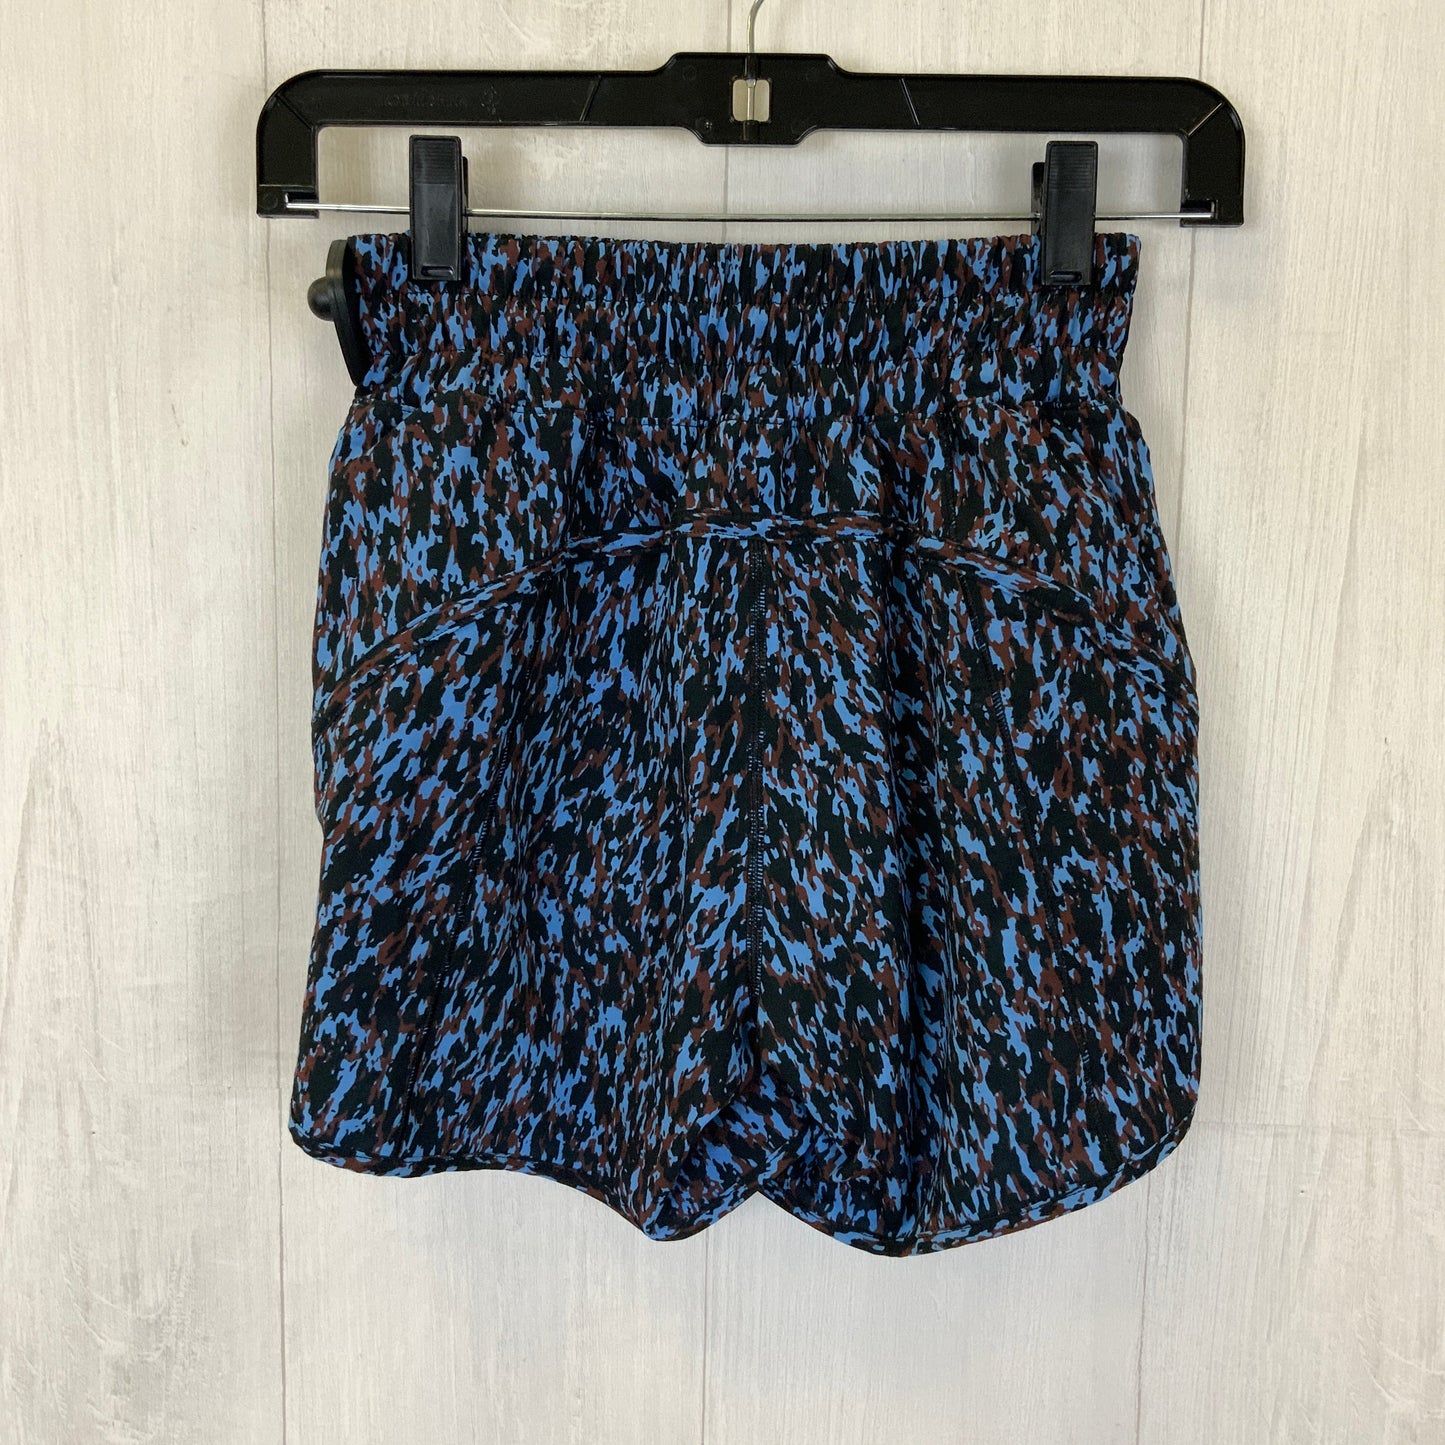 Black & Blue Athletic Shorts Lululemon, Size Xs